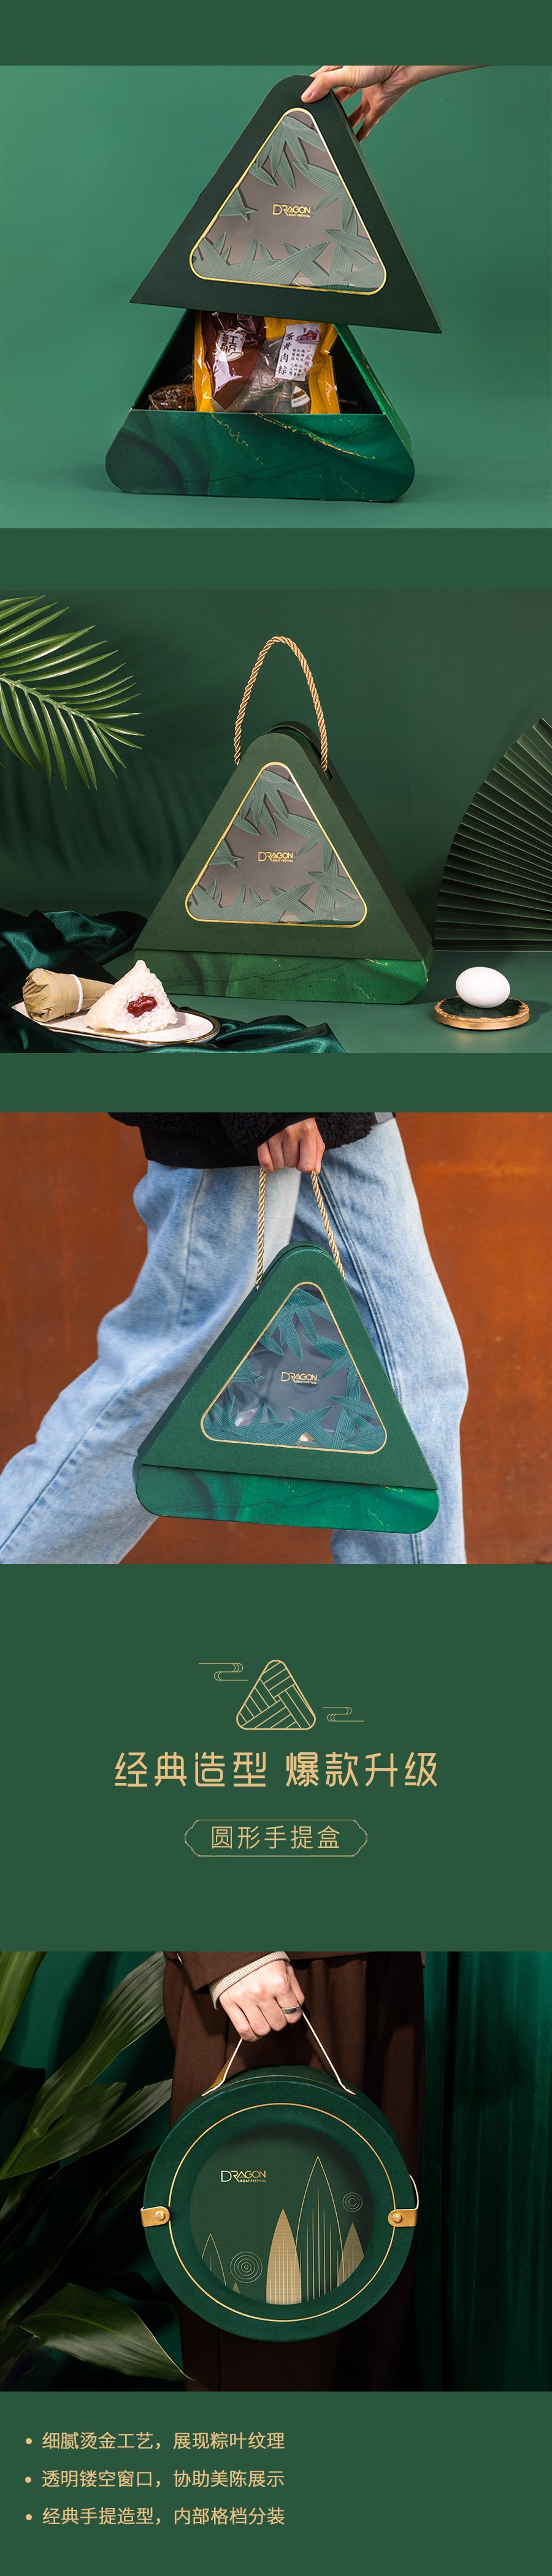 【方森园】端午礼盒包装设计——《礼遇臻粽》